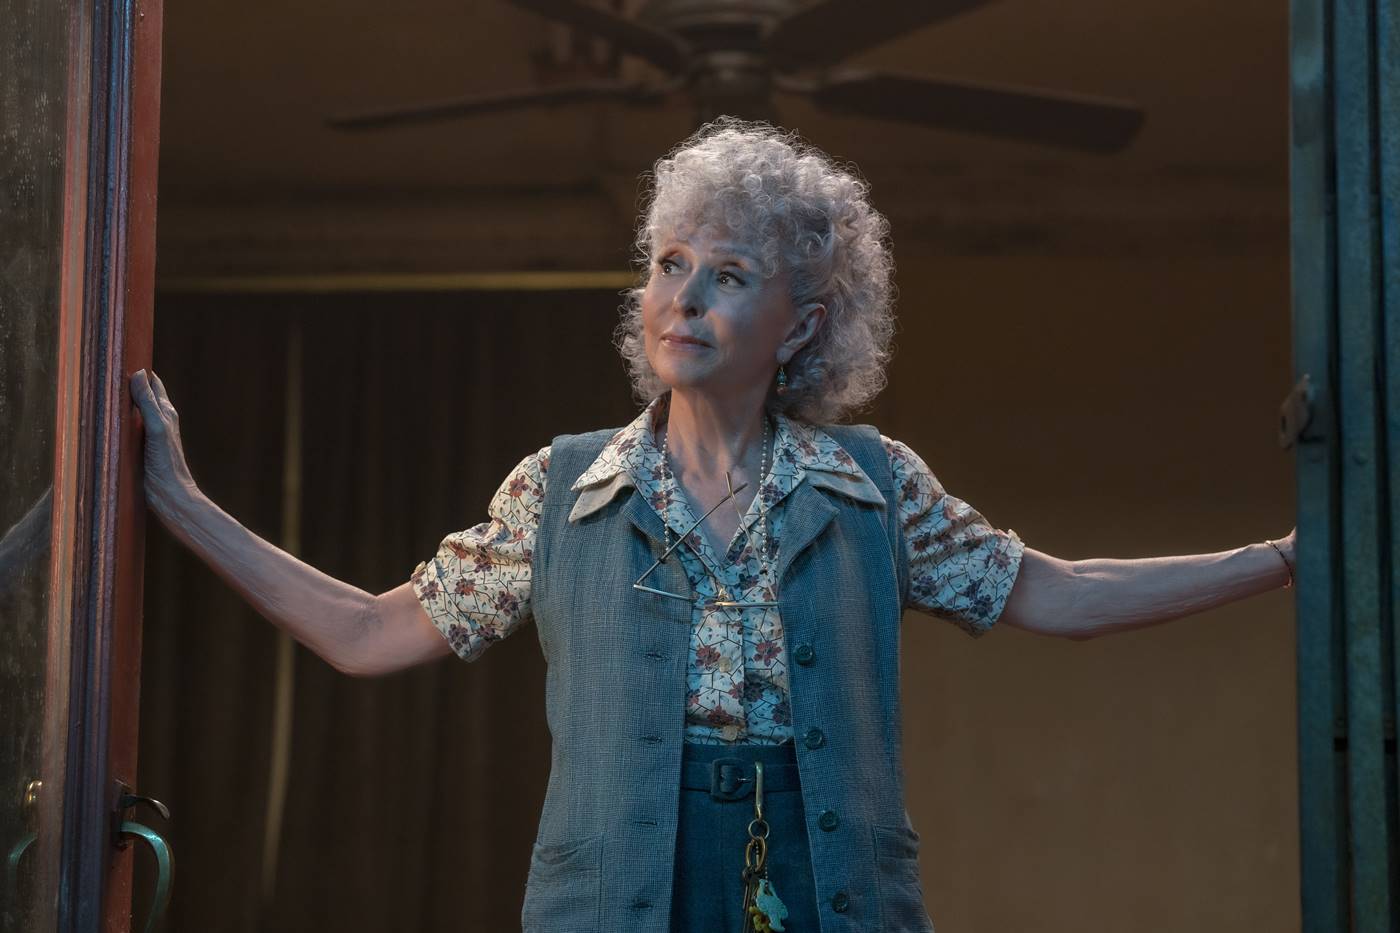 Glumačka diva Rita Moreno posle 60 godina ponovo igra u „Priči sa zapadne strane“